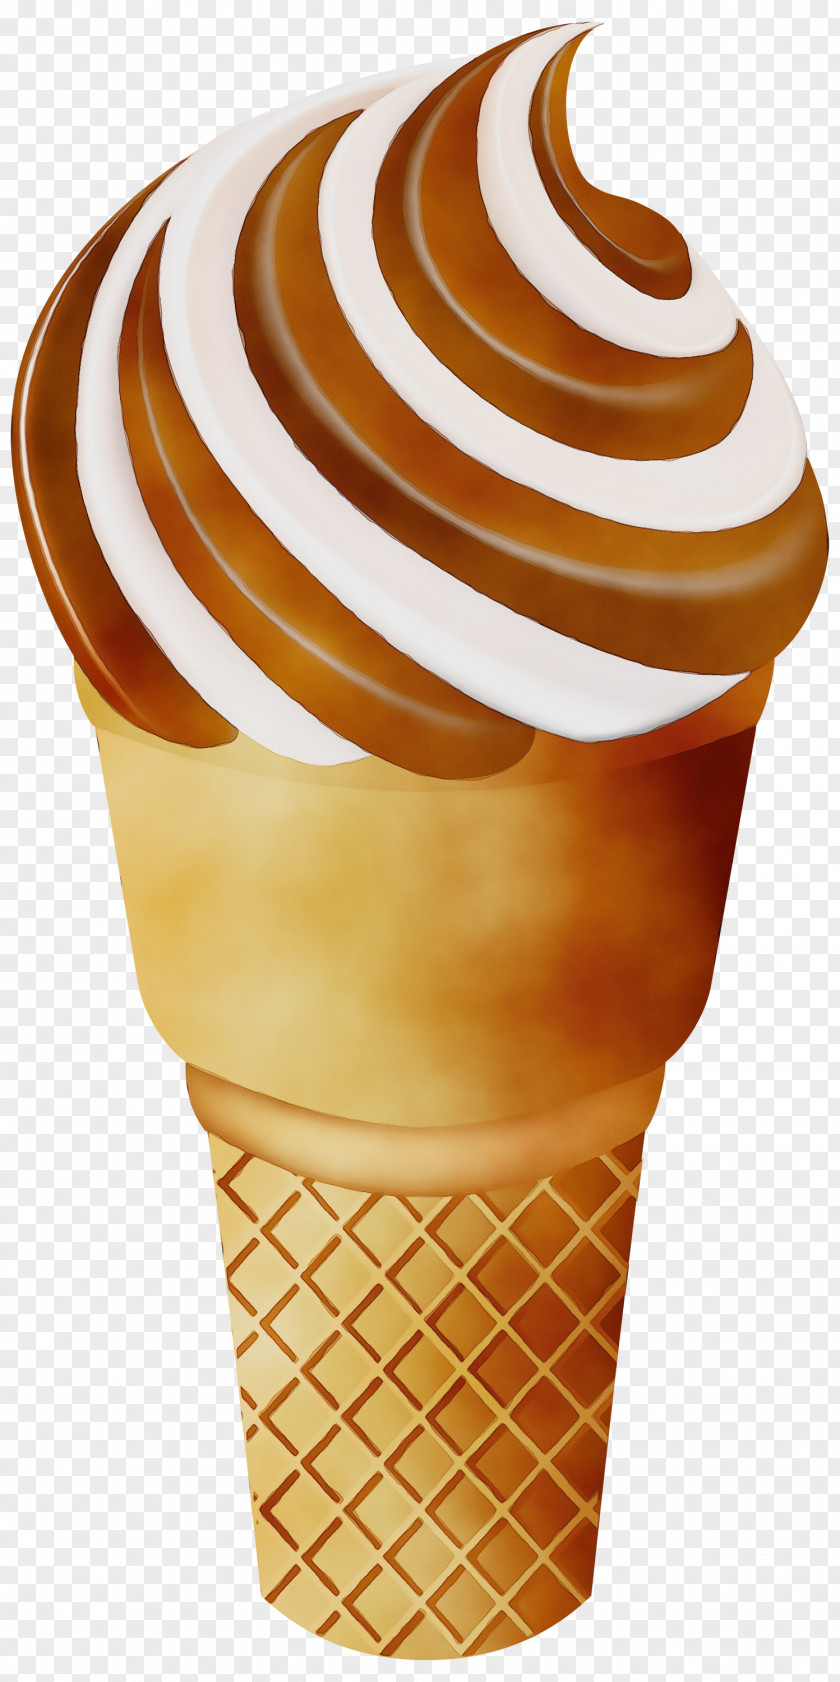 Ice Cream Cones Clip Art Image PNG